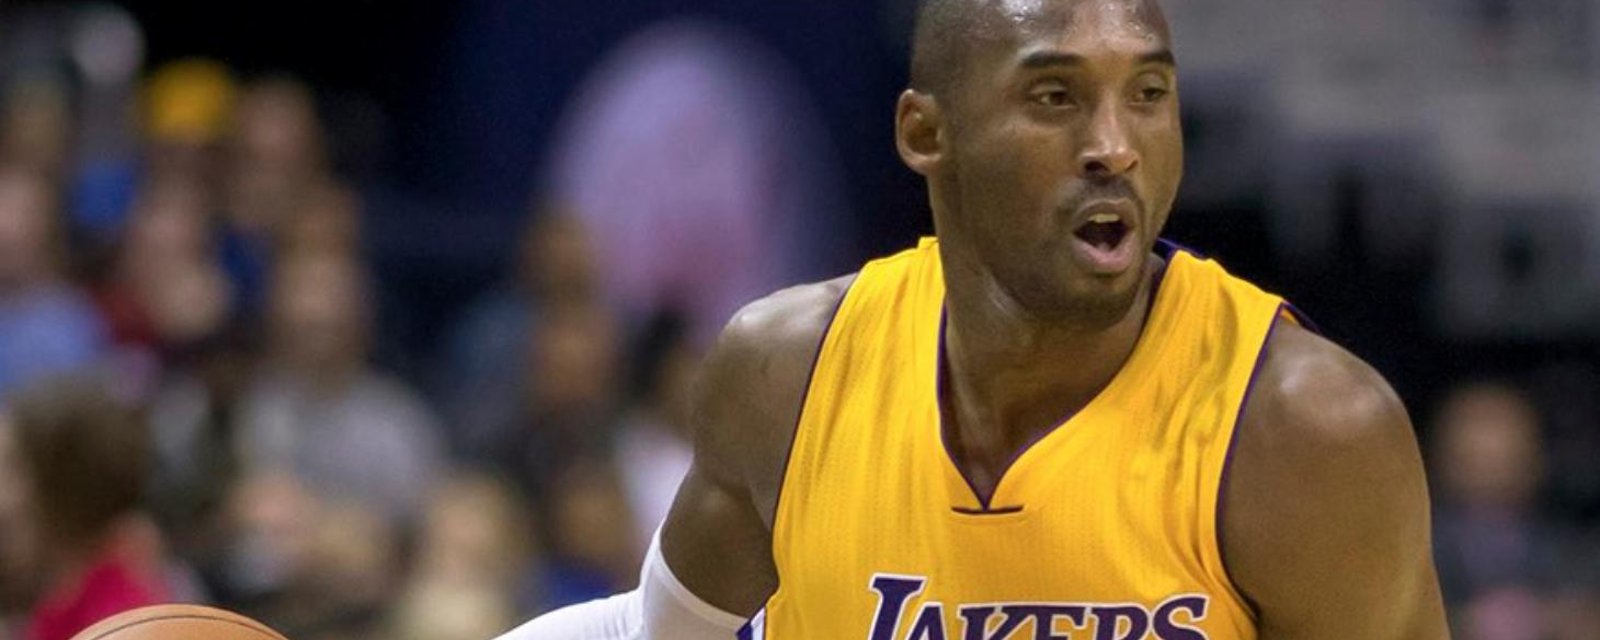 DERNIÈRE HEURE | Kobe Bryant serait décédé dans un accident d'hélicoptère